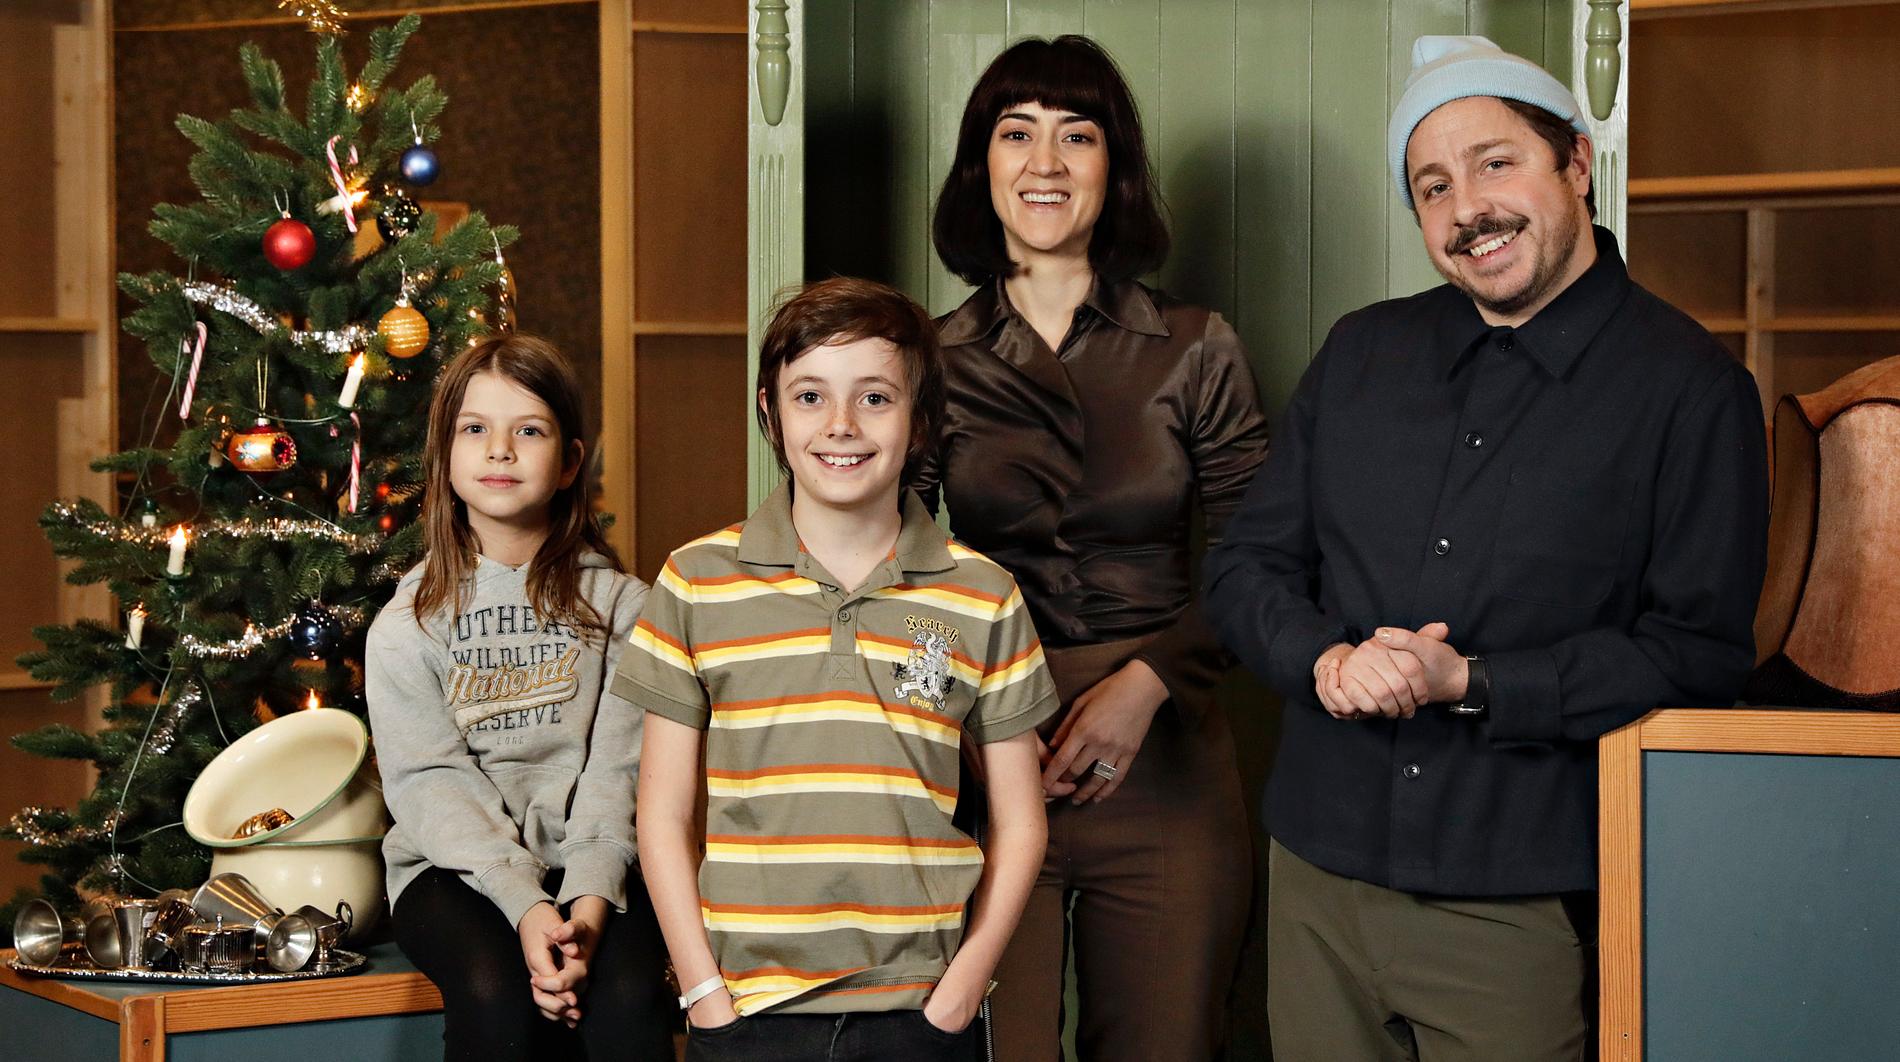 Familjen Knyckertz spelas av David Sundin (pappa Bove), Gizem Erdogan (mamma Fia) och barnen Ture och Kriminellen spelas av Axel Adelöw och Paloma Grandin. Pressbild.